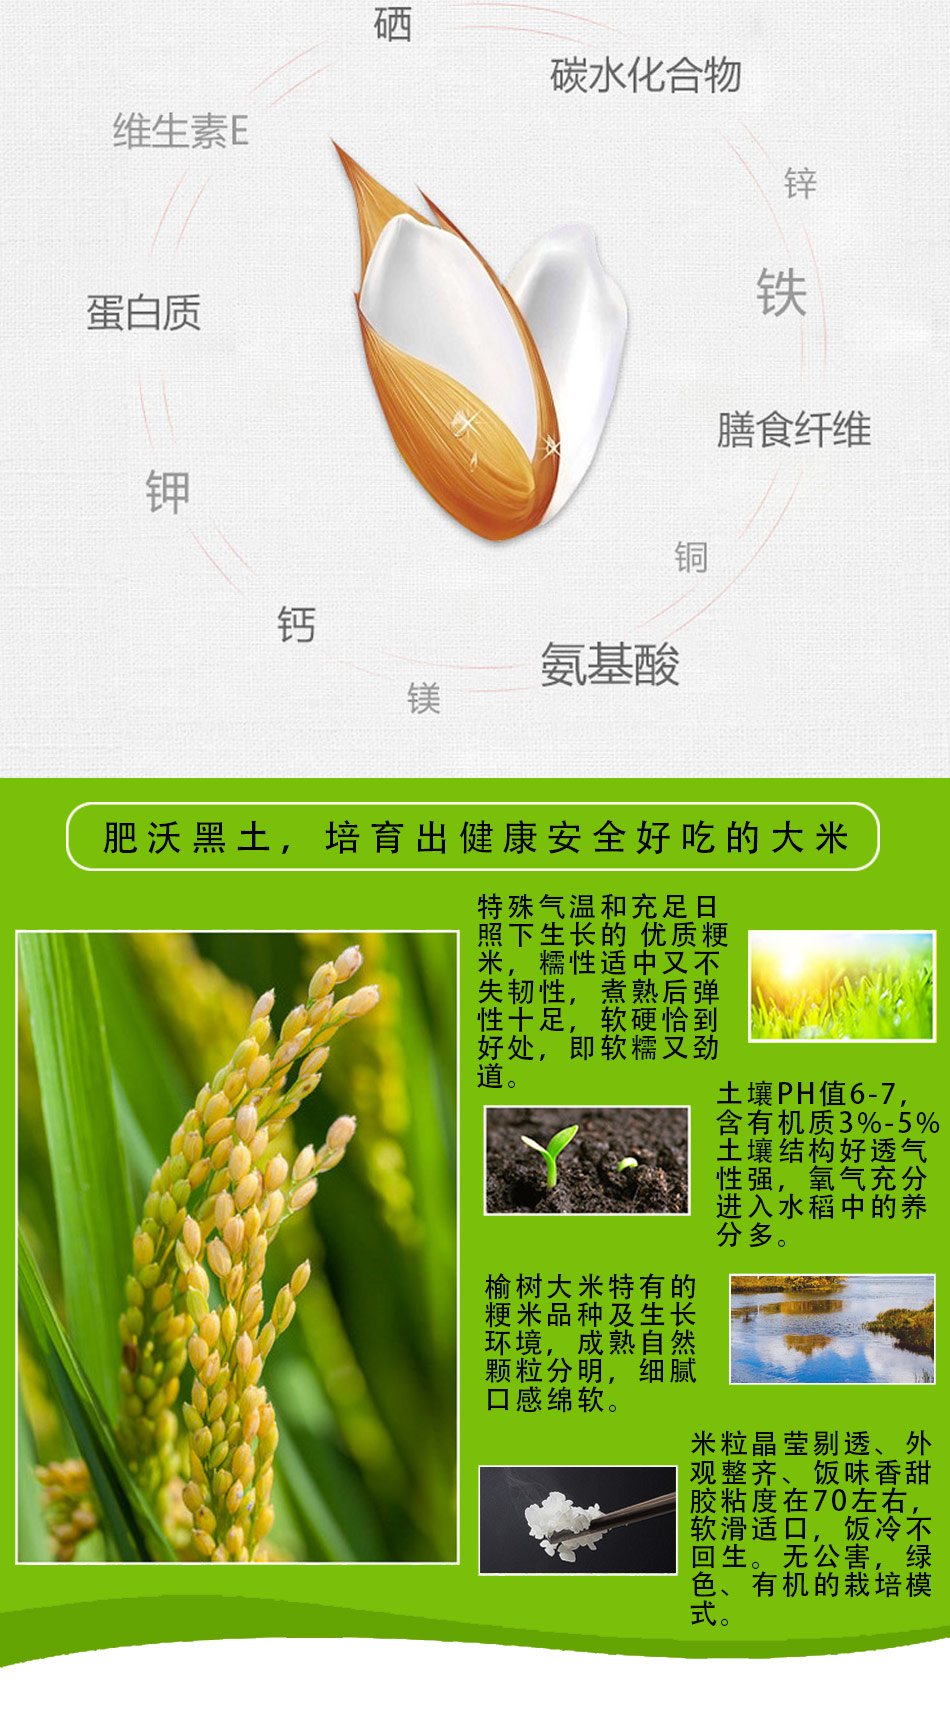  吉林勝金米業有限公司：現代化管理水稻才是企業發展正確方向